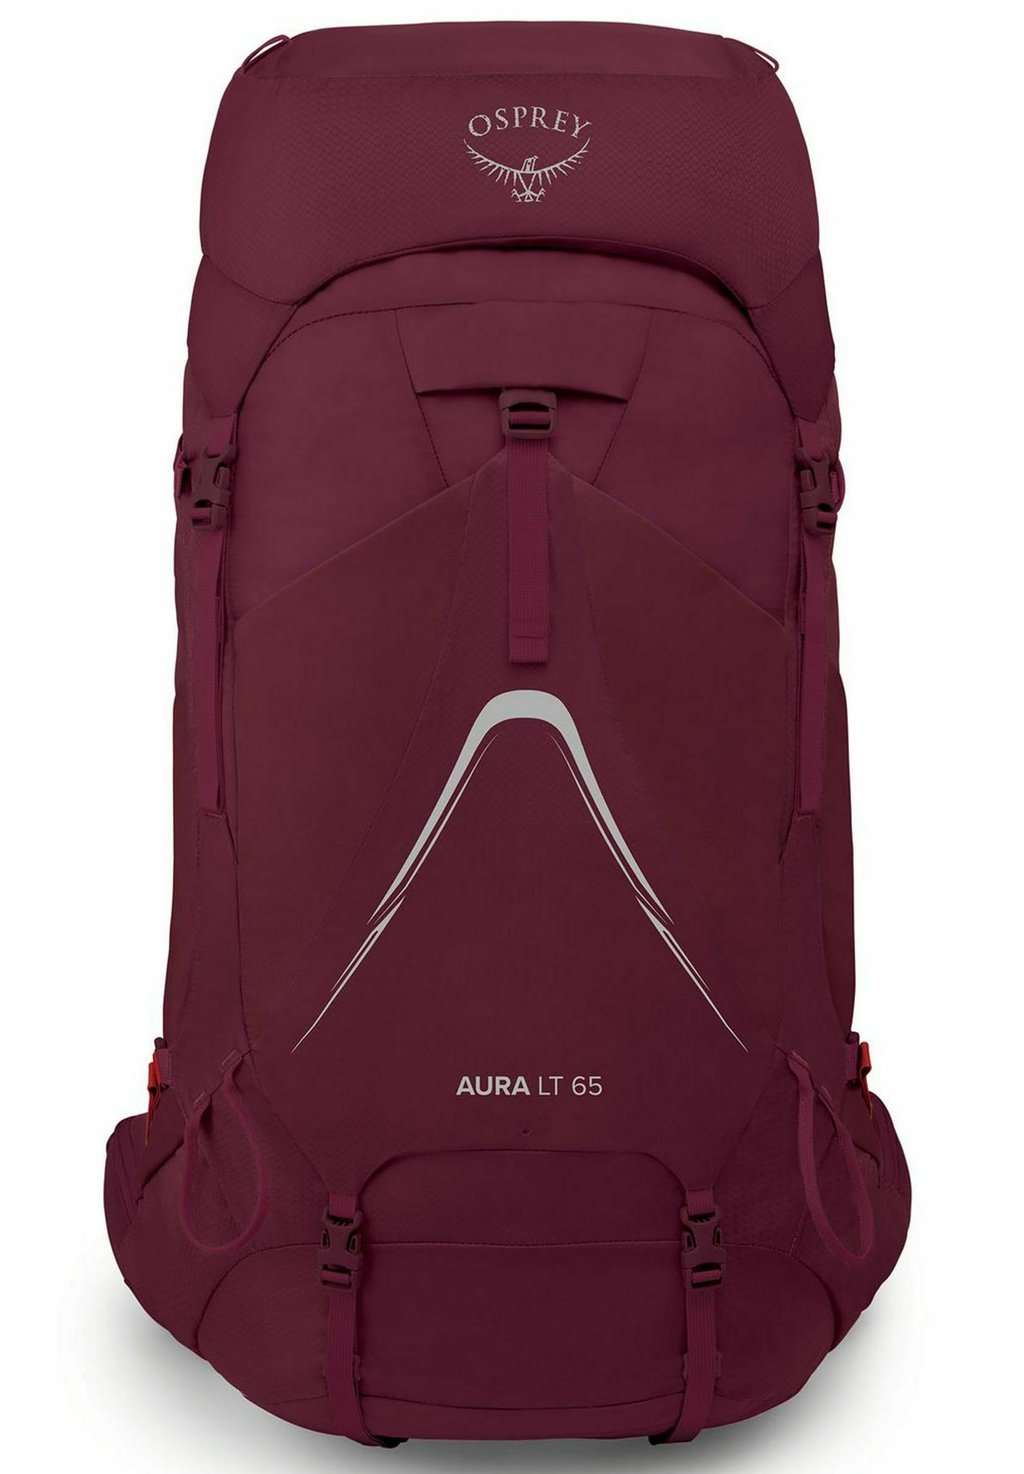 Треккинговый рюкзак AURA AG LT 65 Osprey, цвет antidote purple